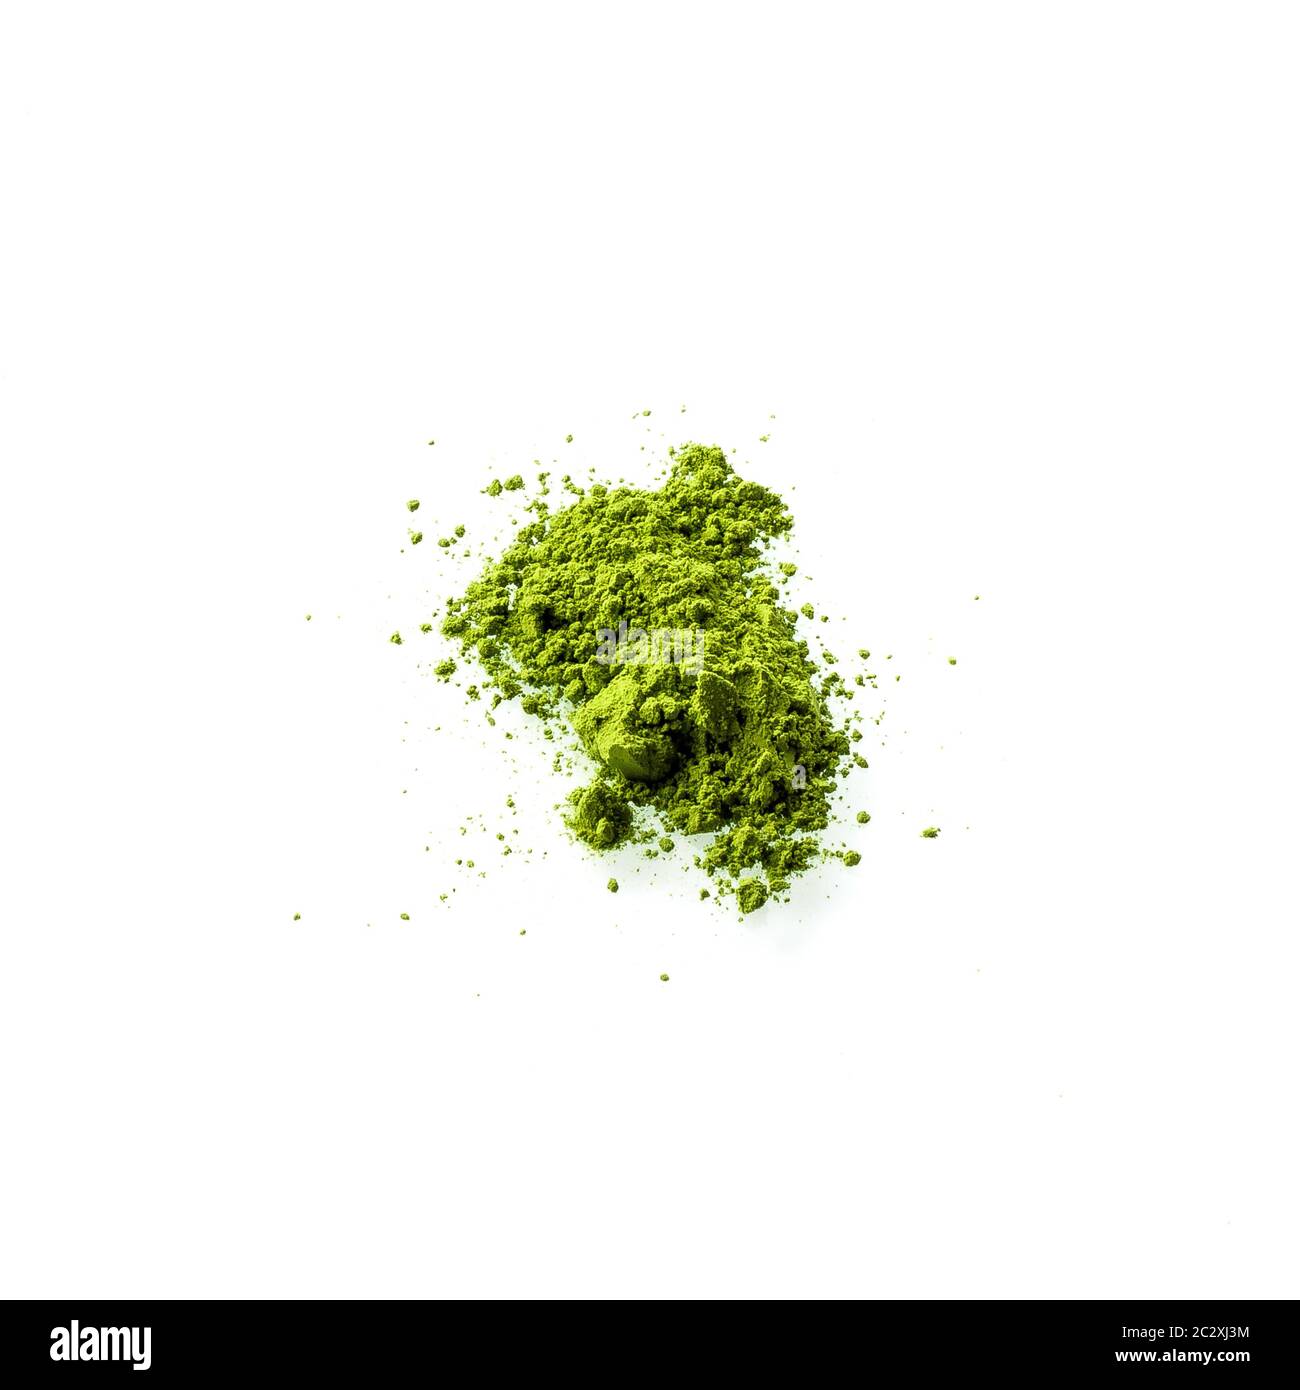 Matcha Pulver auf weißem Hintergrund. Matcha wird aus fein gemahlenem grünem Teepulver hergestellt. Es ist sehr häufig in der japanischen Kultur. Matcha ist gesund, weil es Stockfoto